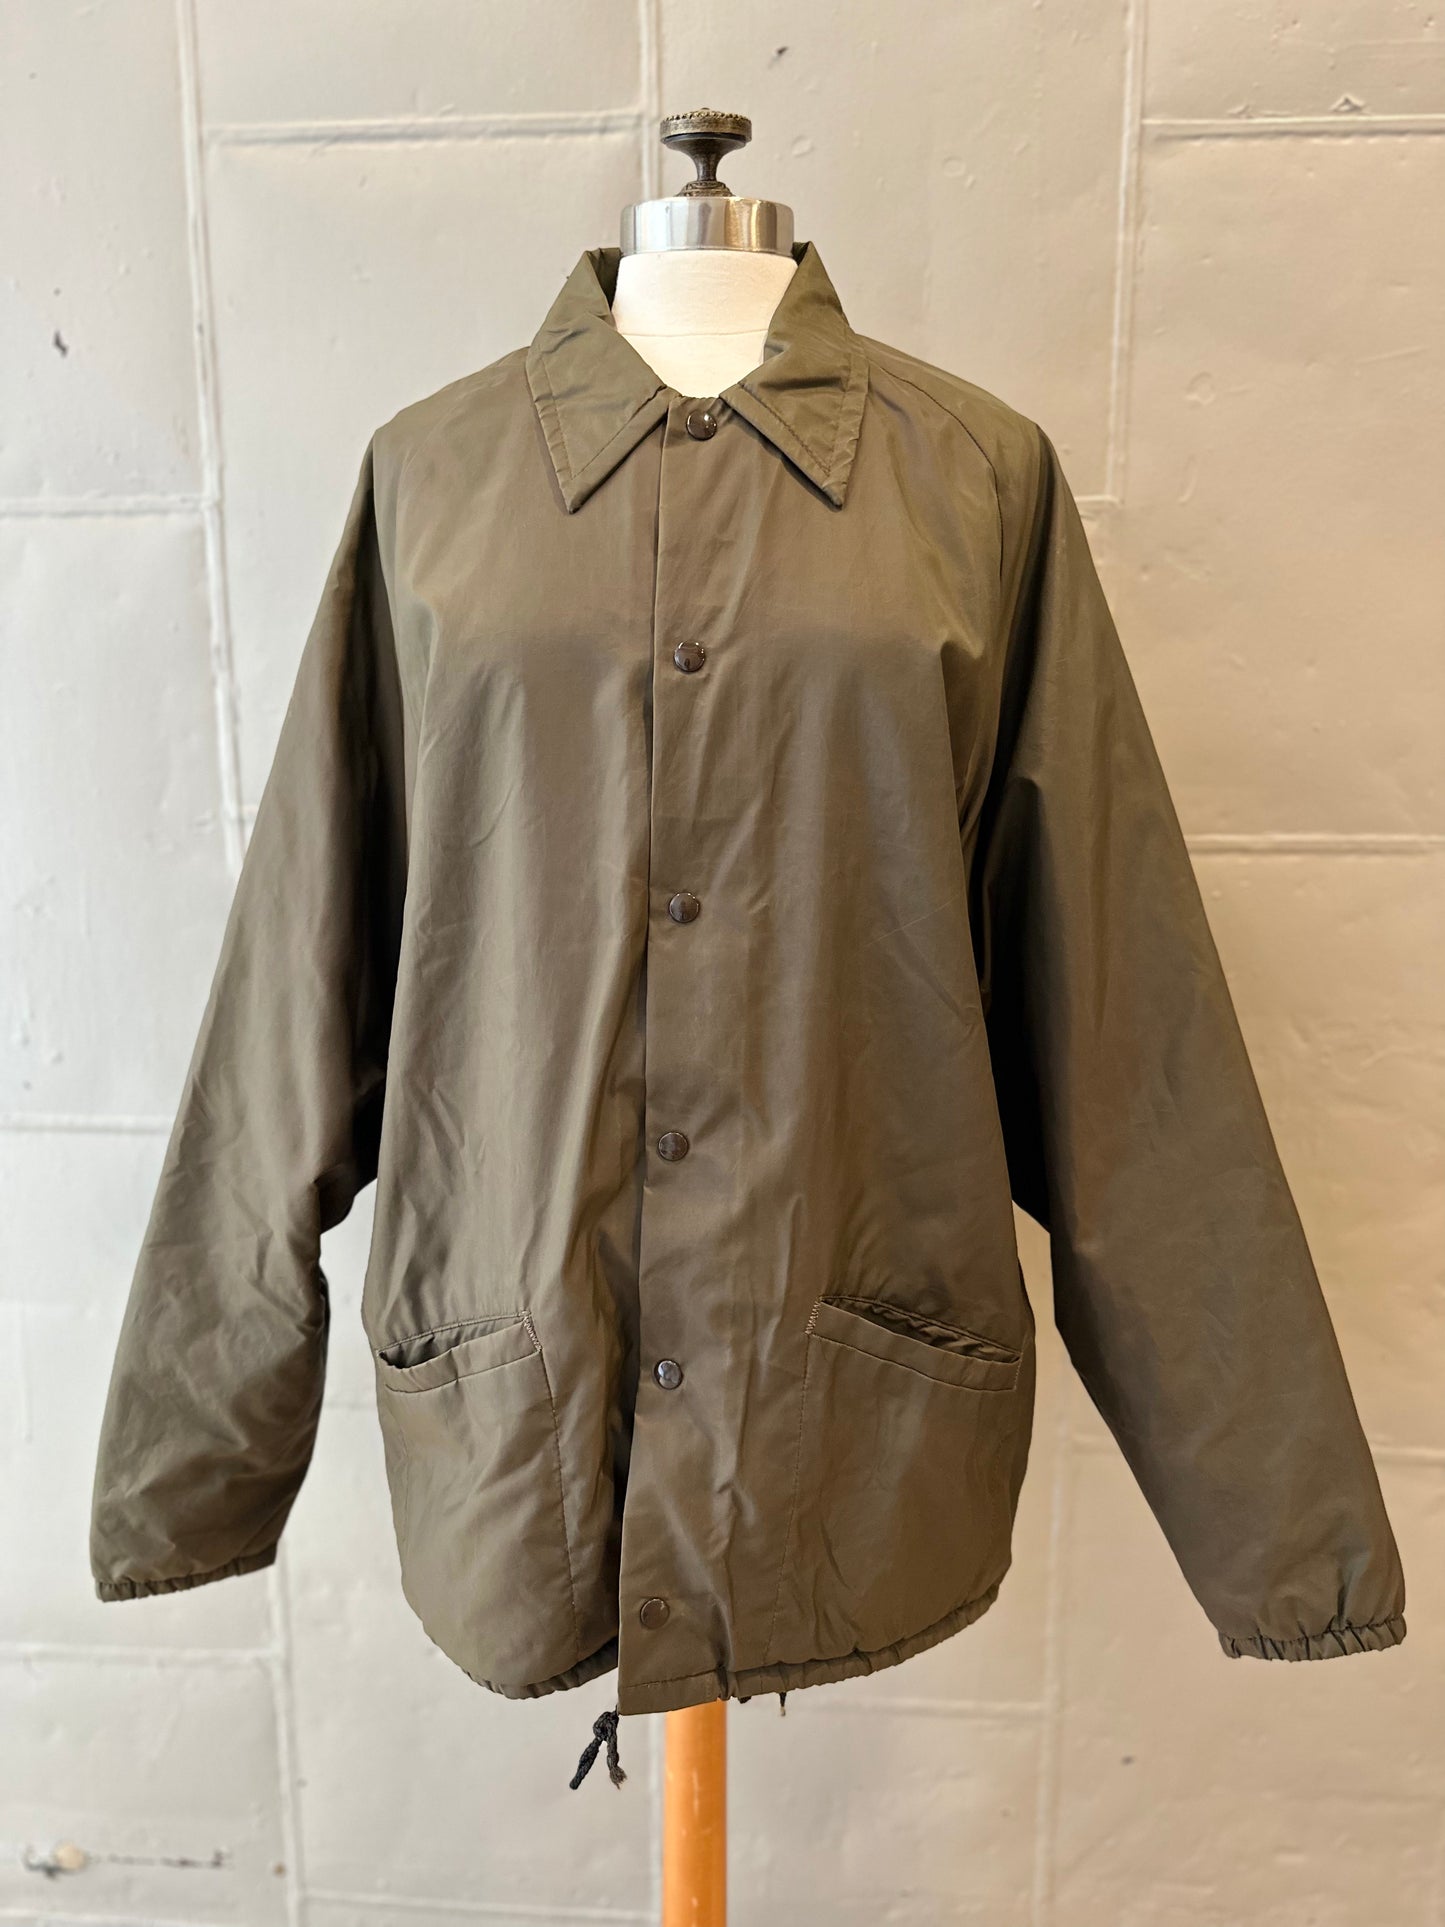 Vintage Don Alleson Lined Jacket